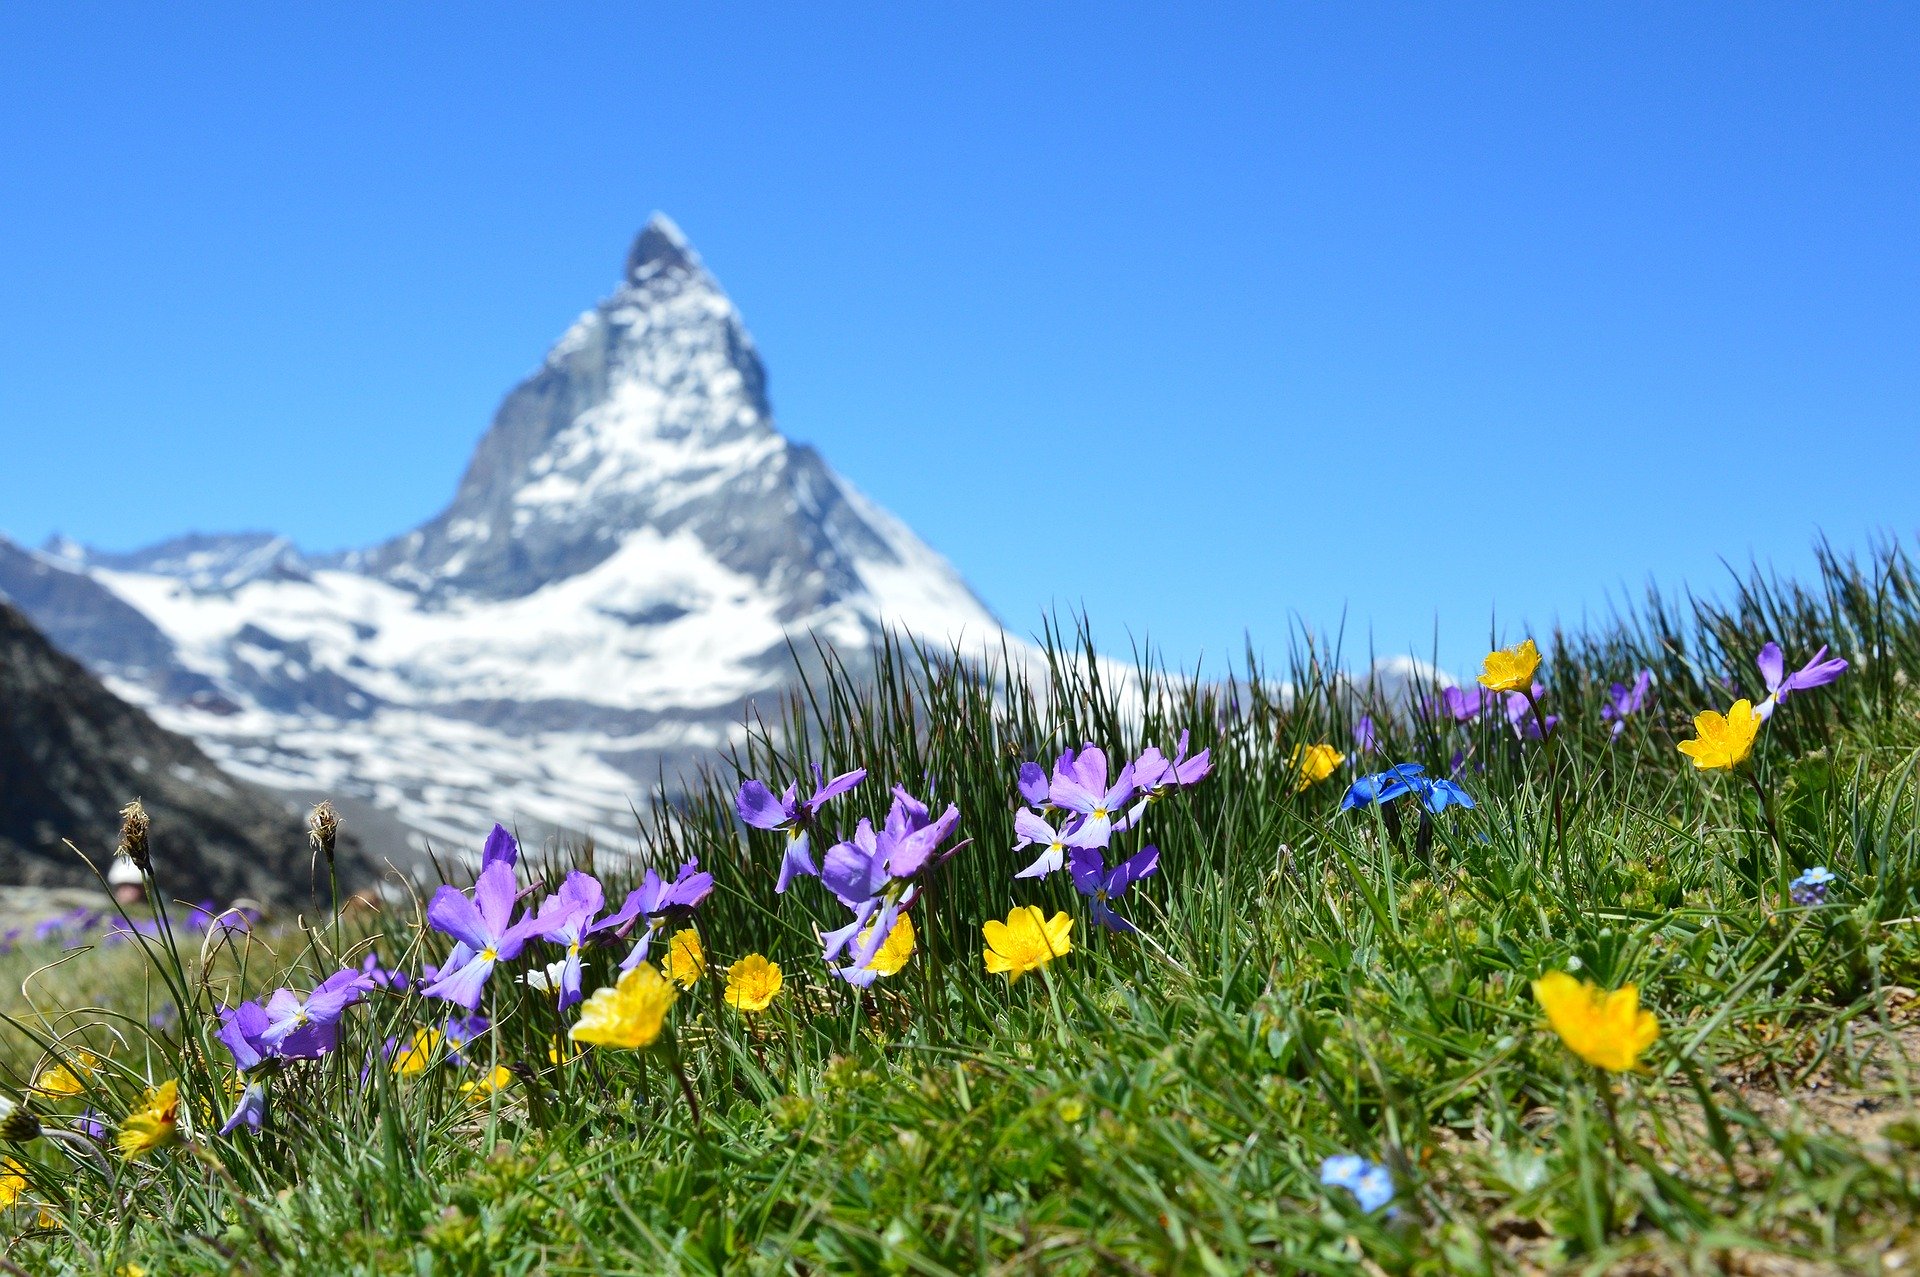 Matterhorn (c) Bild von Claudia Beyli auf Pixabay